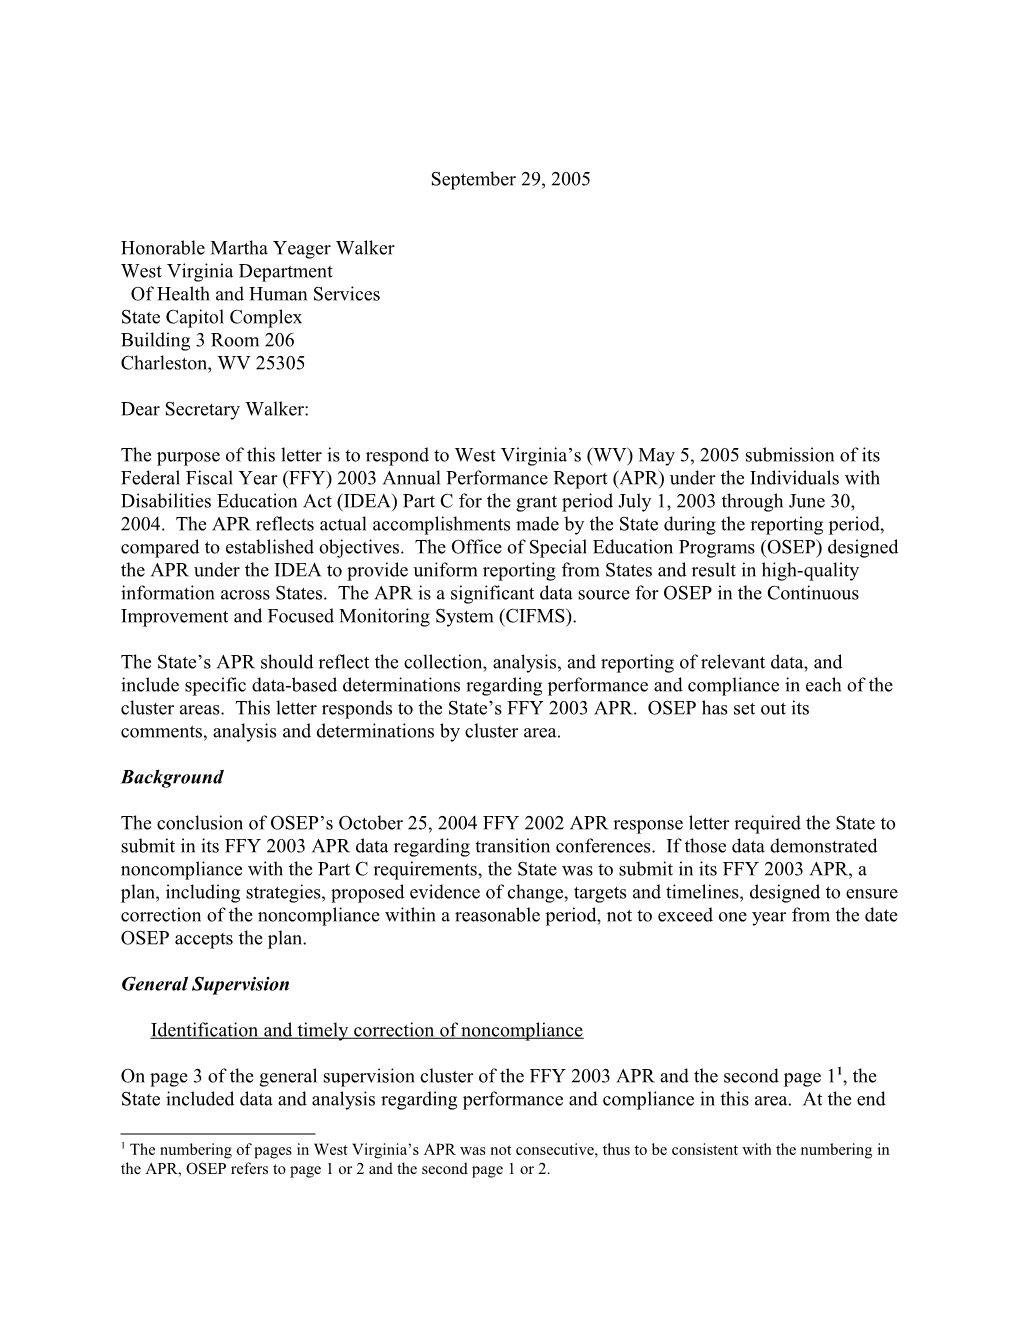 West Virginia Part C APR Letter 2003-2004 (Msword)